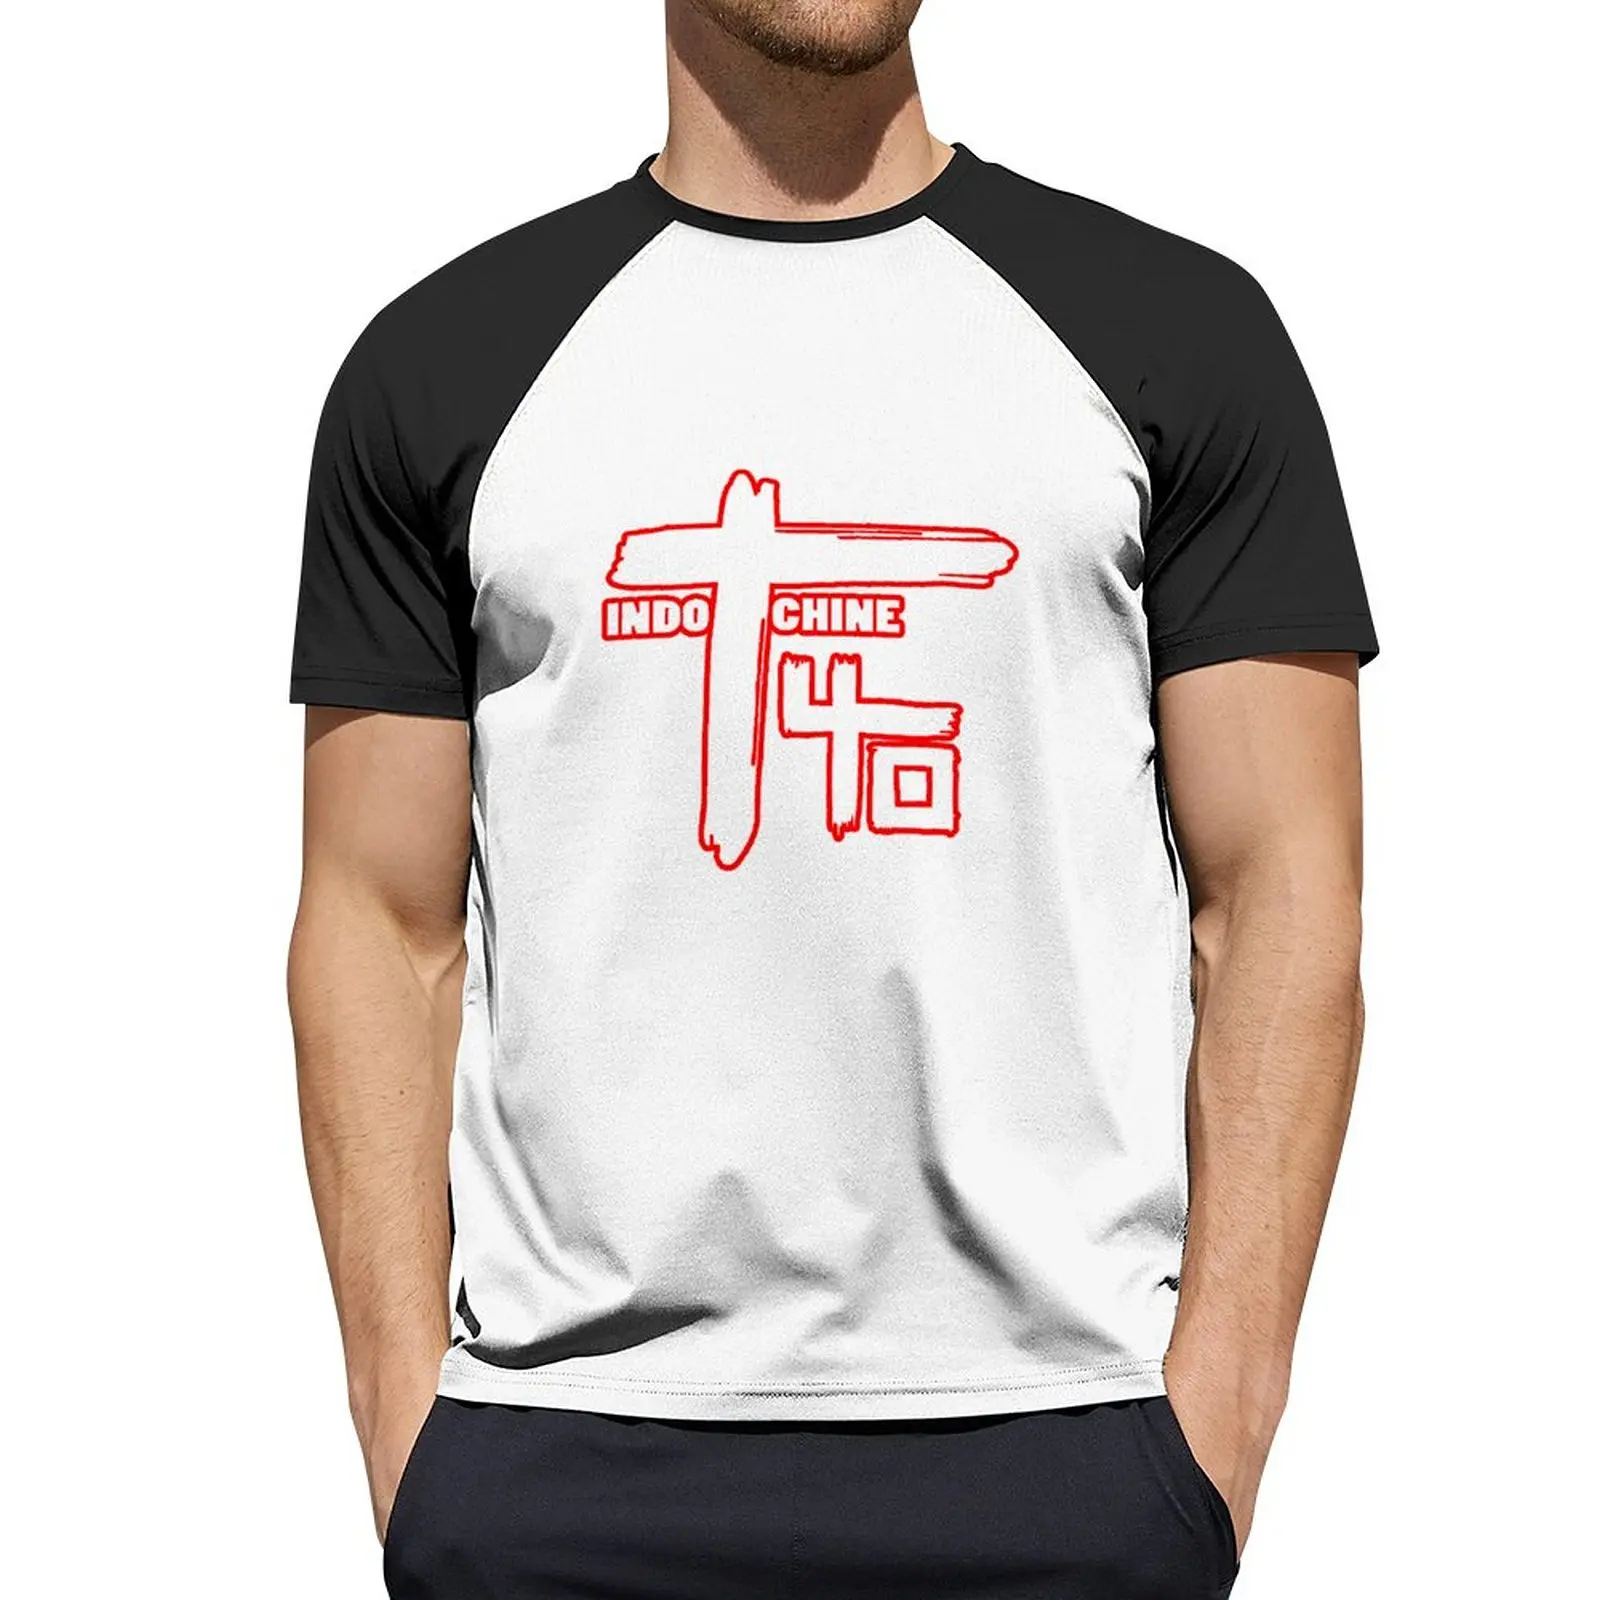 Лучший логотип индокитайской группы 3 exselna Жанры: Рок, ? футболка новой волны Эстетическая одежда быстросохнущая рубашка мужские футболки